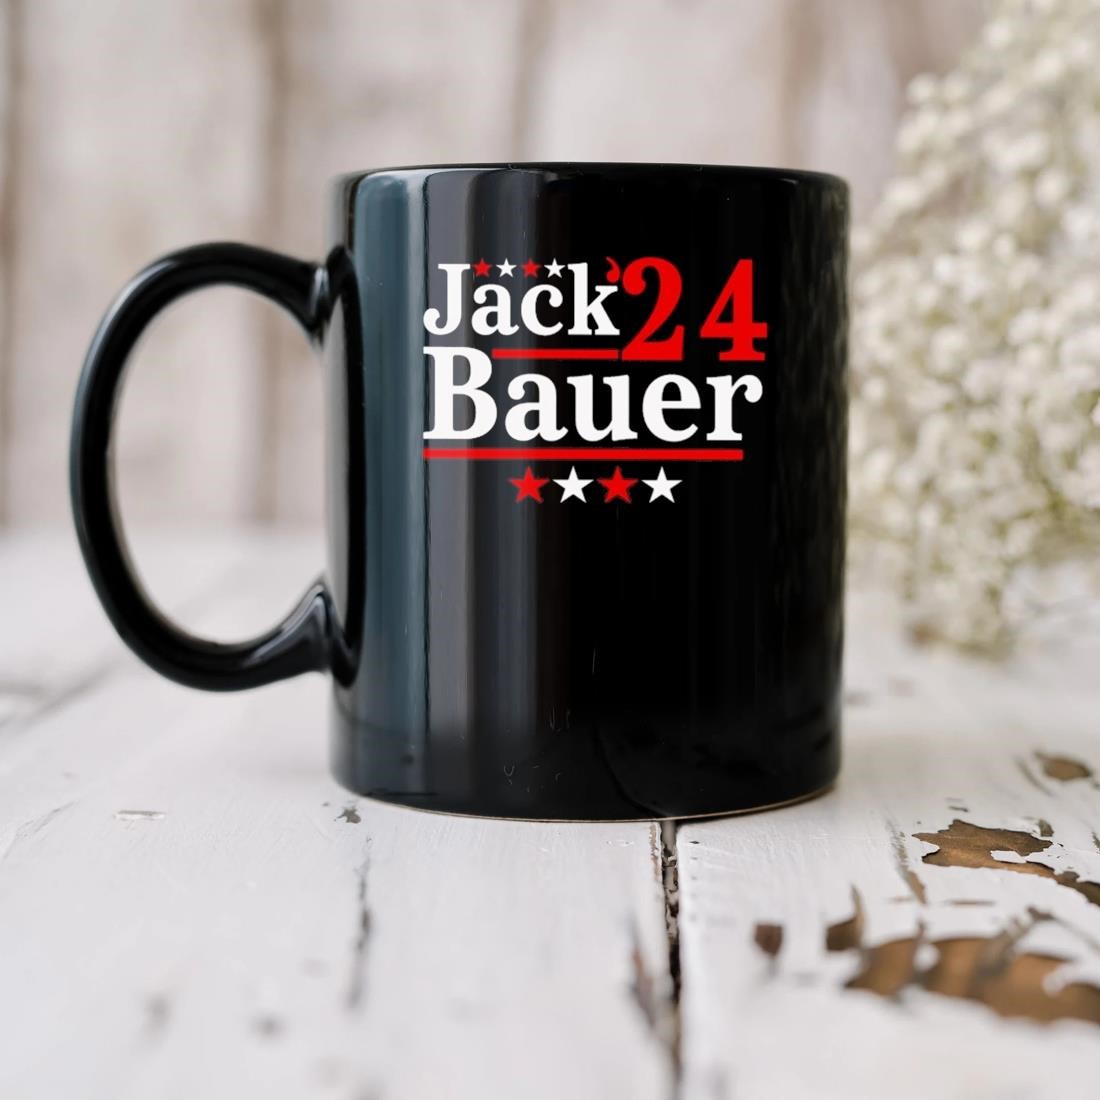 Matt Hardy Wearing Jack Bauer 24 Mug biu.jpg